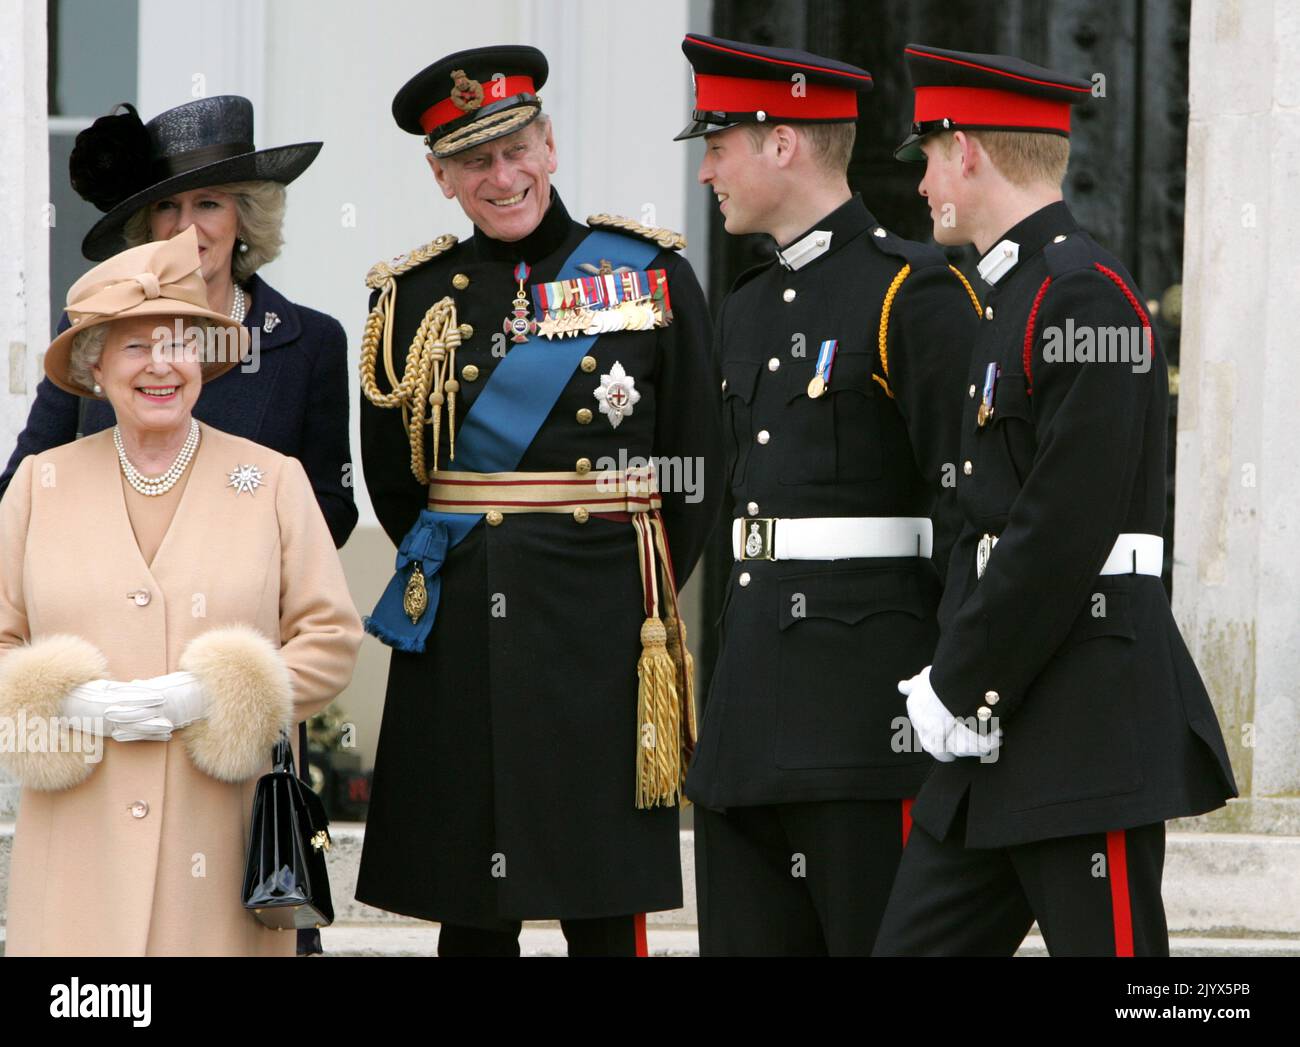 Foto del file datata 12/04/2006 della Regina Elisabetta II, della Duchessa di Cornovaglia (dietro), del Duca di Edimburgo, del Principe William e del Principe Harry all'Accademia militare reale di Sandhurst dopo la parata del Sovrano che segnò il completamento dell'addestramento dell'ufficiale del Principe Harry. La regina morì pacificamente a Balmoral questo pomeriggio, Buckingham Palace ha annunciato. Data di emissione: Giovedì 8 settembre 2022. Foto Stock